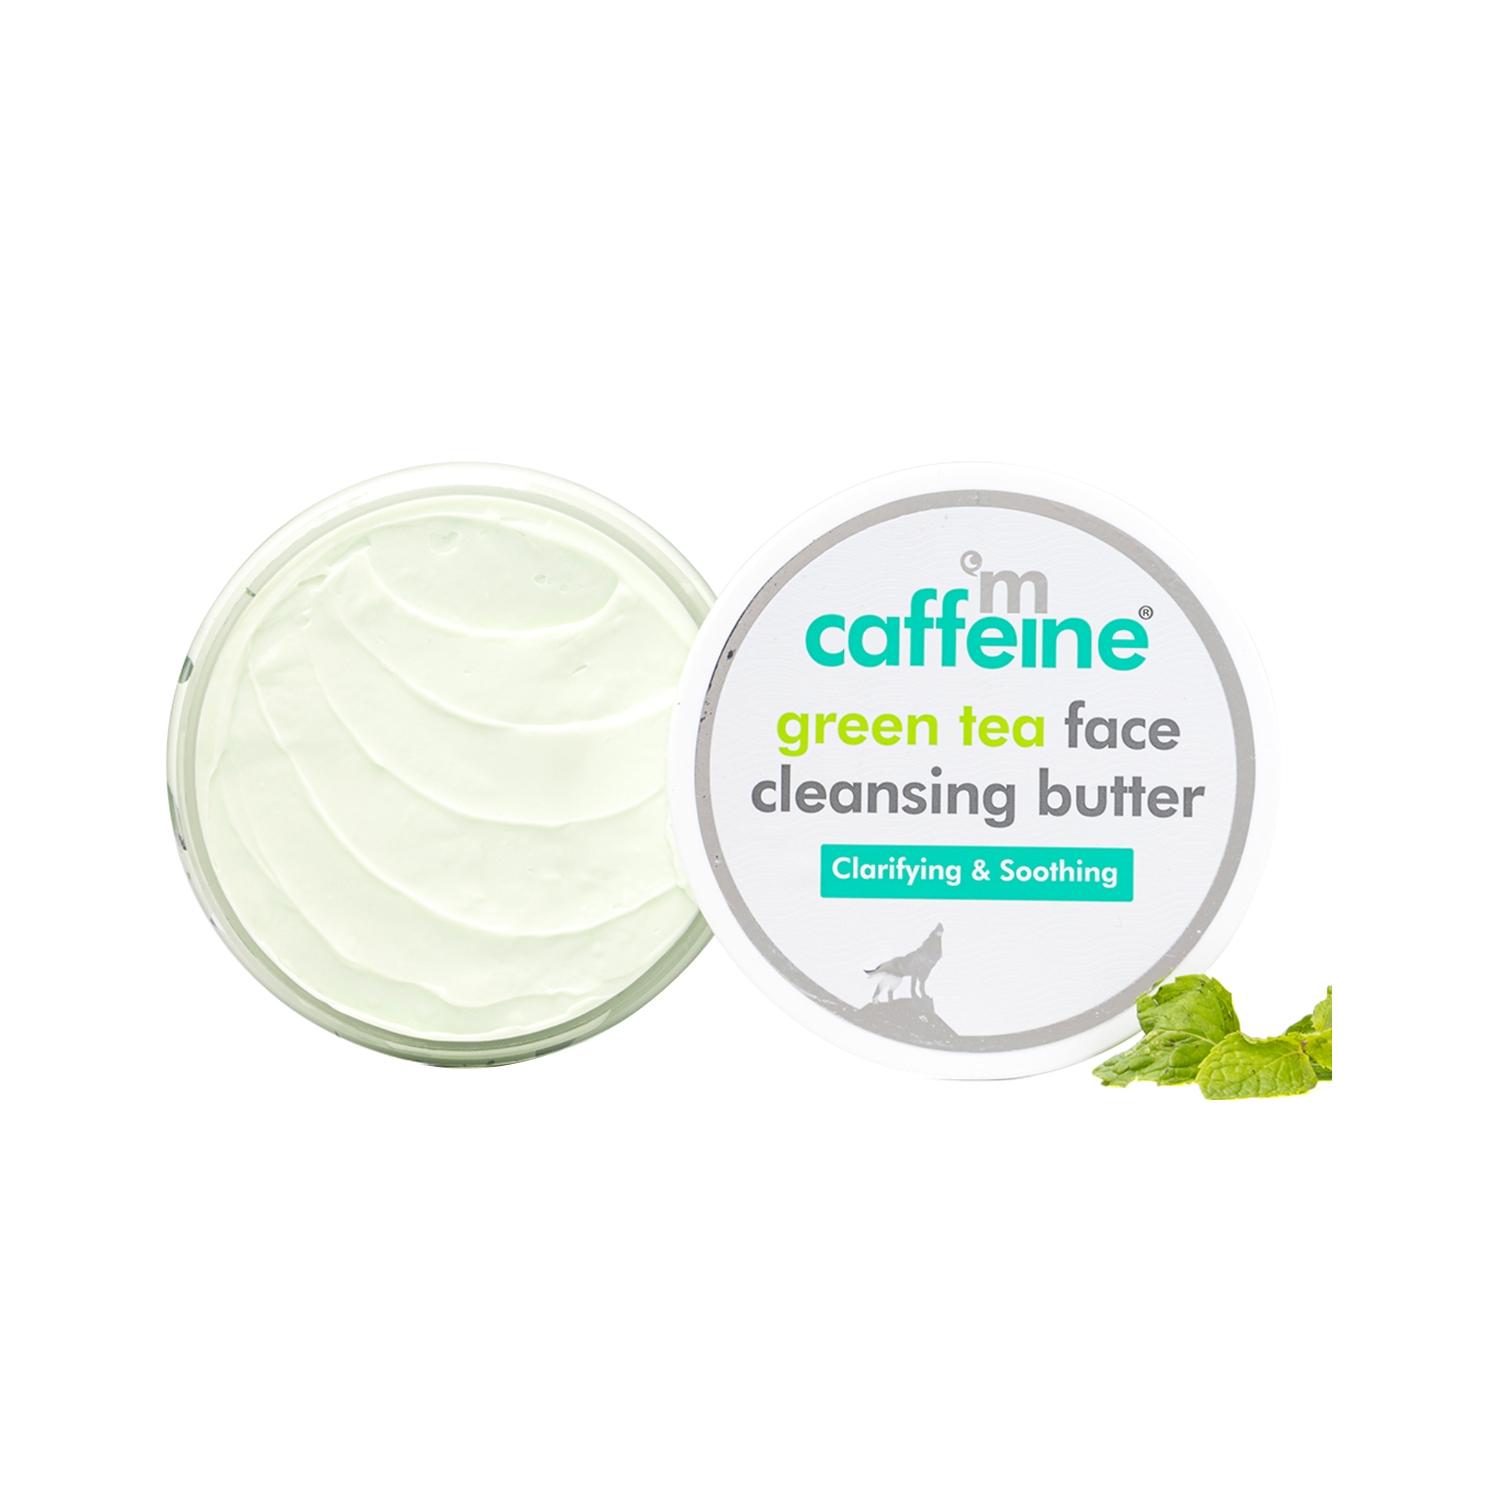 mcaffeine green tea face cleansing butter (100g)